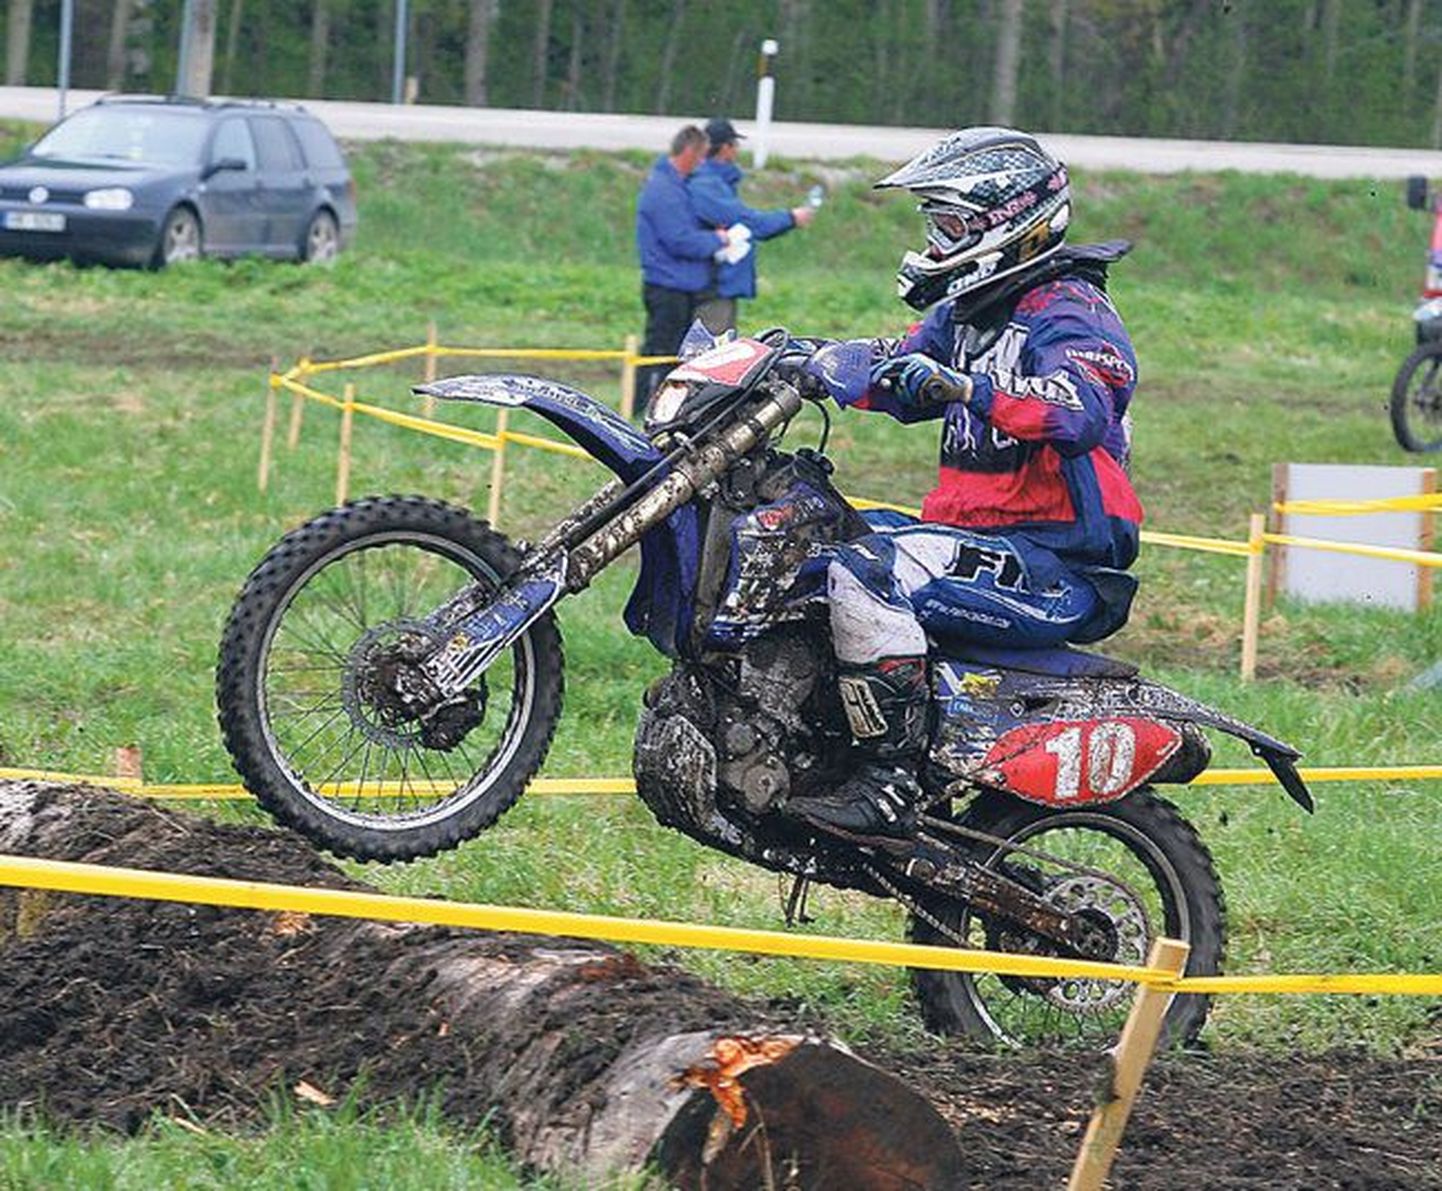 Paikuse motoklubi eestvedaja Toivo Nikopensius kindlustas Jõesuu sprindi võiduga oma liidrikohta Balti meistrivõistlustel.